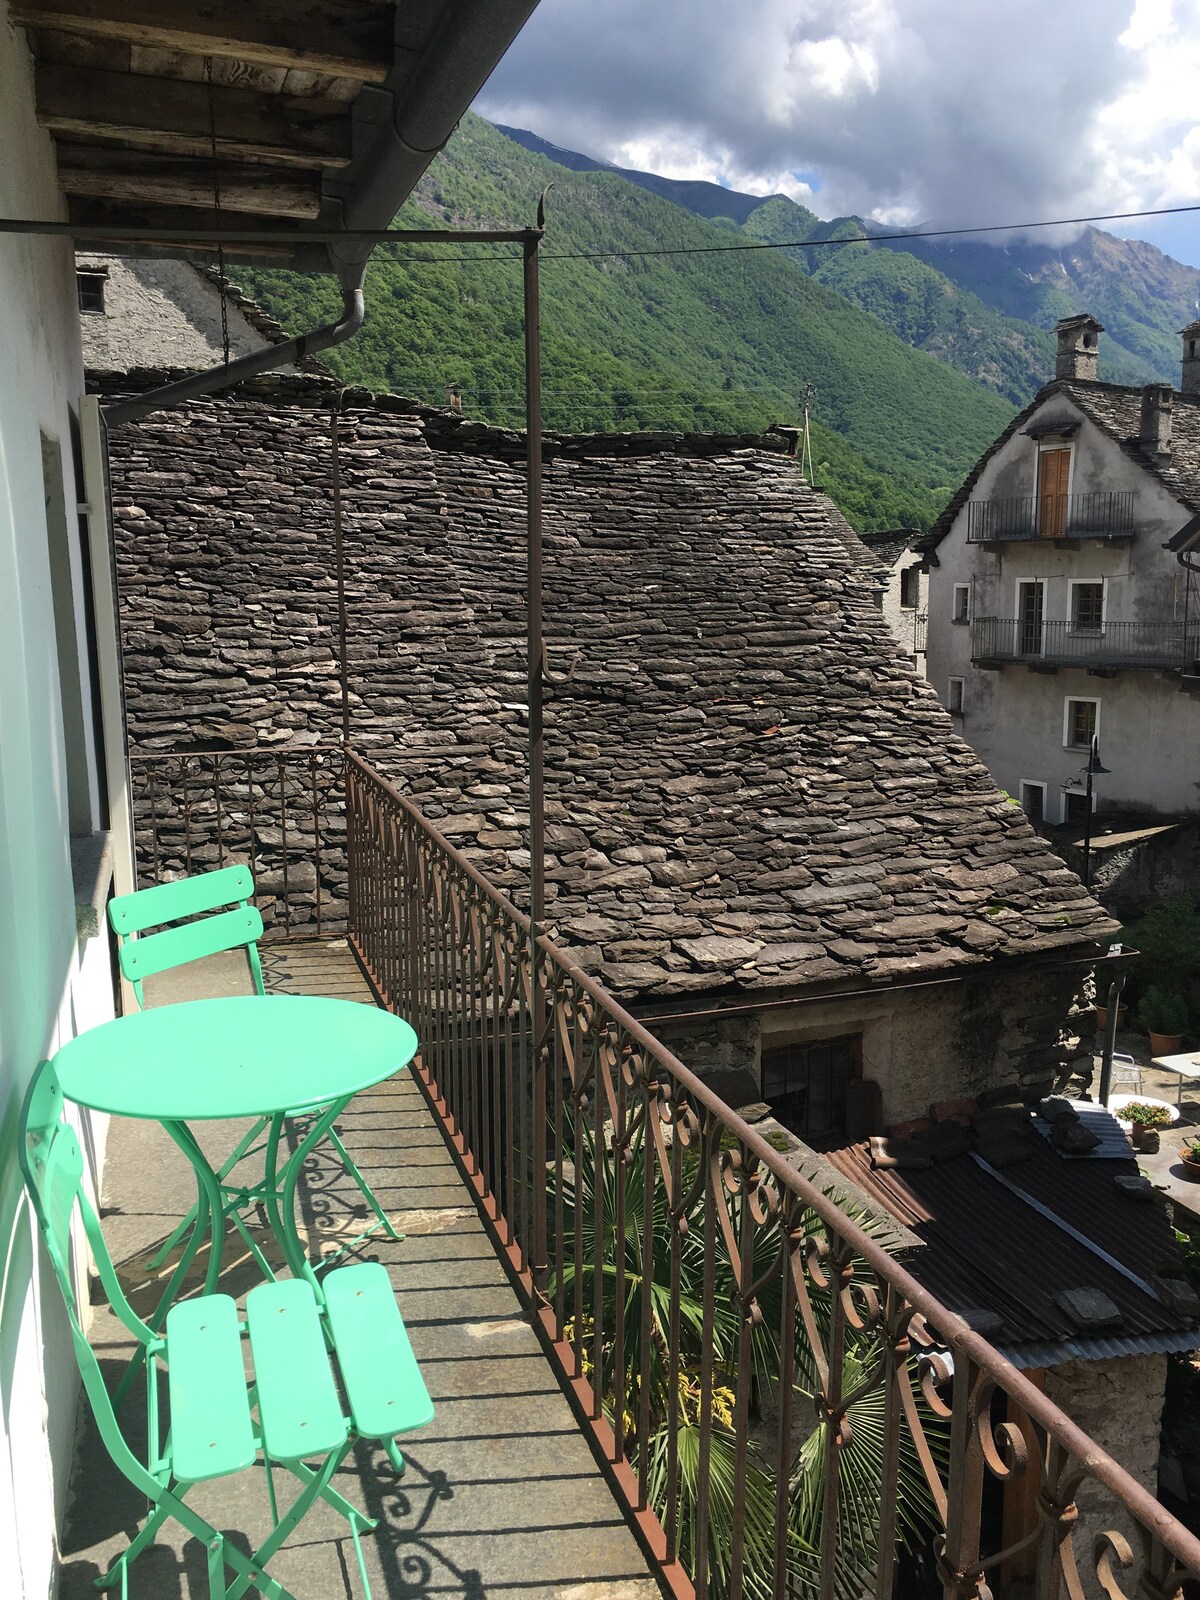 Casa Celeste
Ticino Valle Maggia nahe Locarno